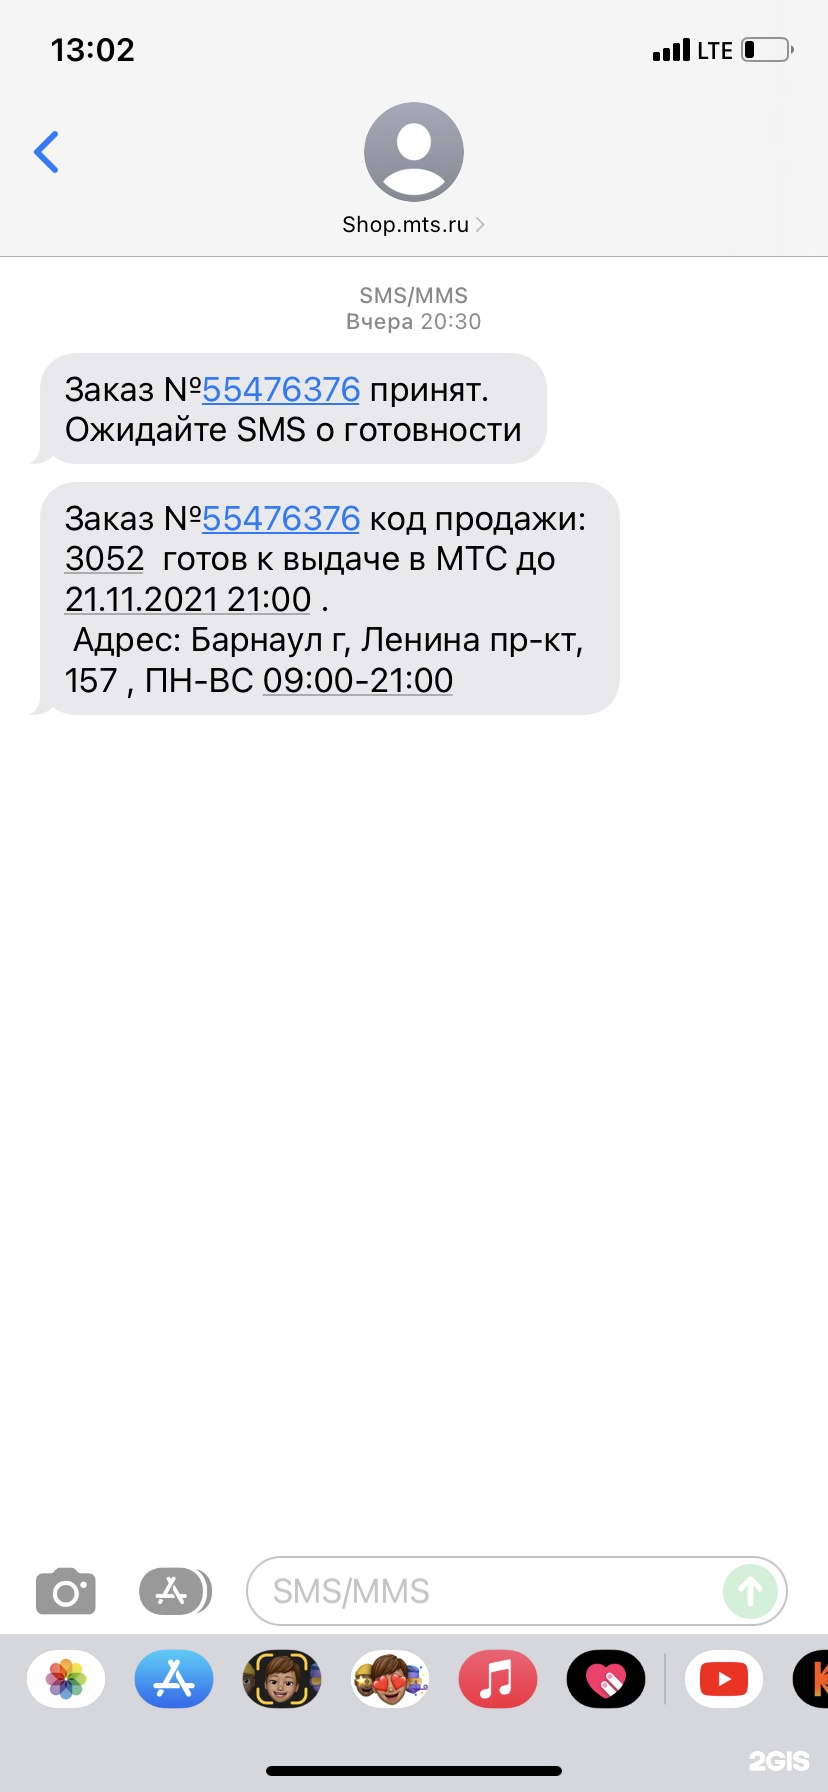 Мтс Интернет Магазин Барнаул